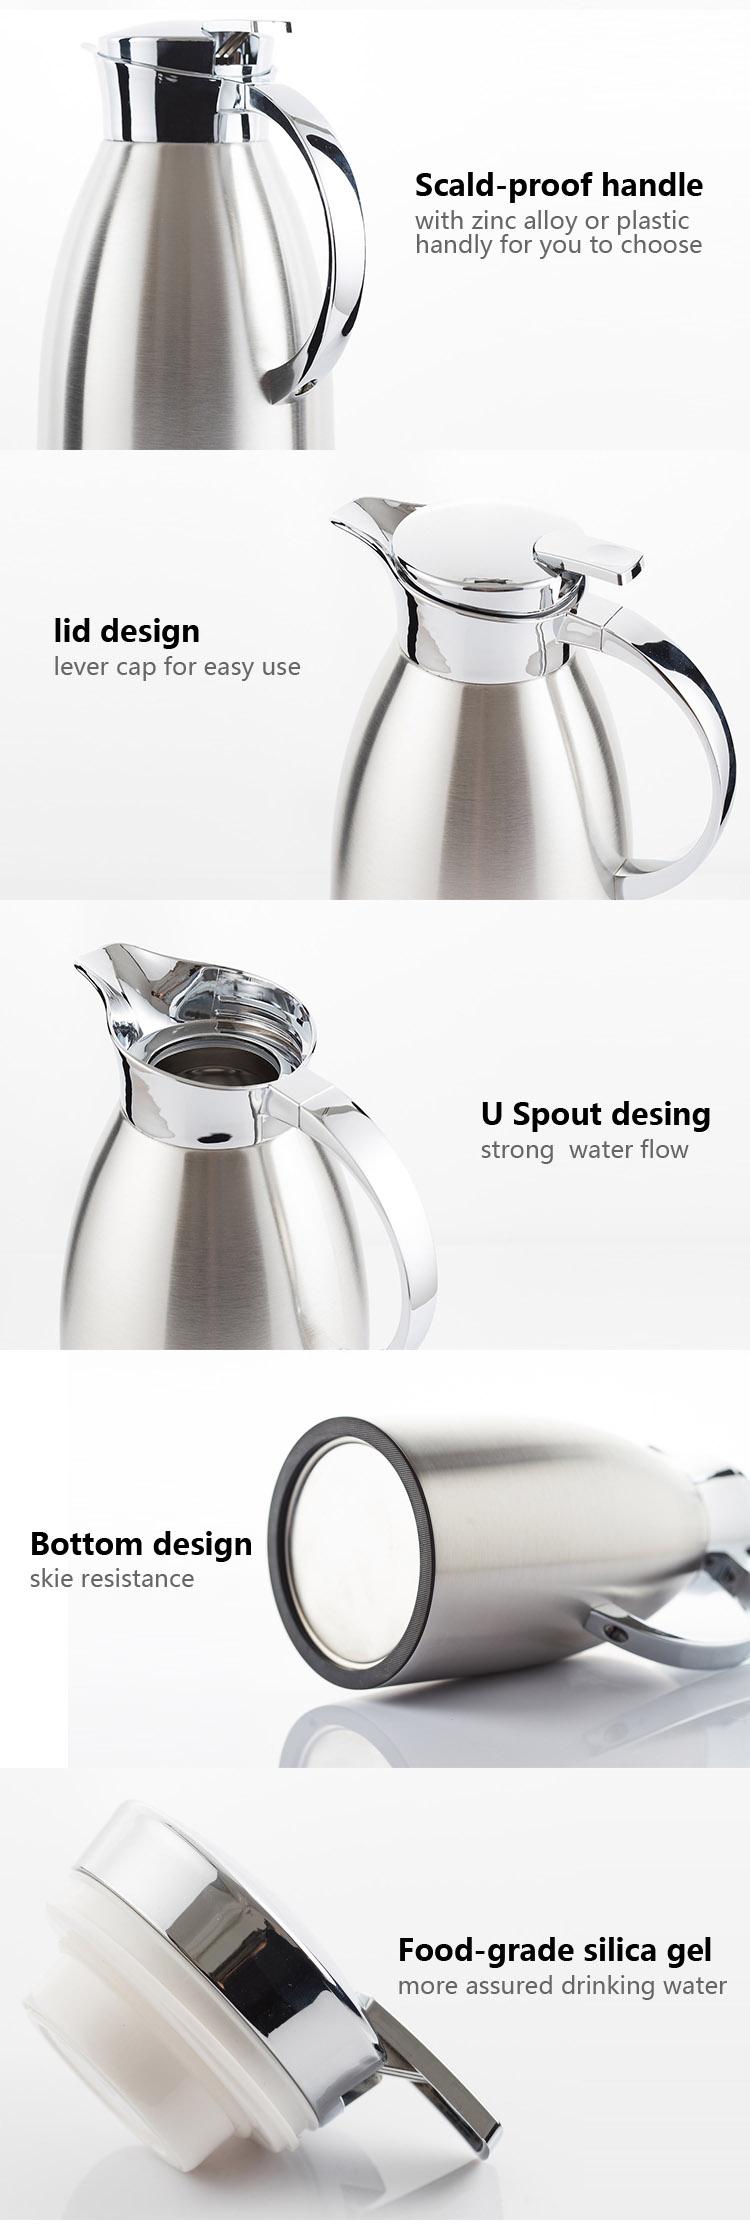 直身罗马壶 08 - high quality Roman stainless steel thermal vacuum kettle for coffee and tea pot keep 24 Hour Retention